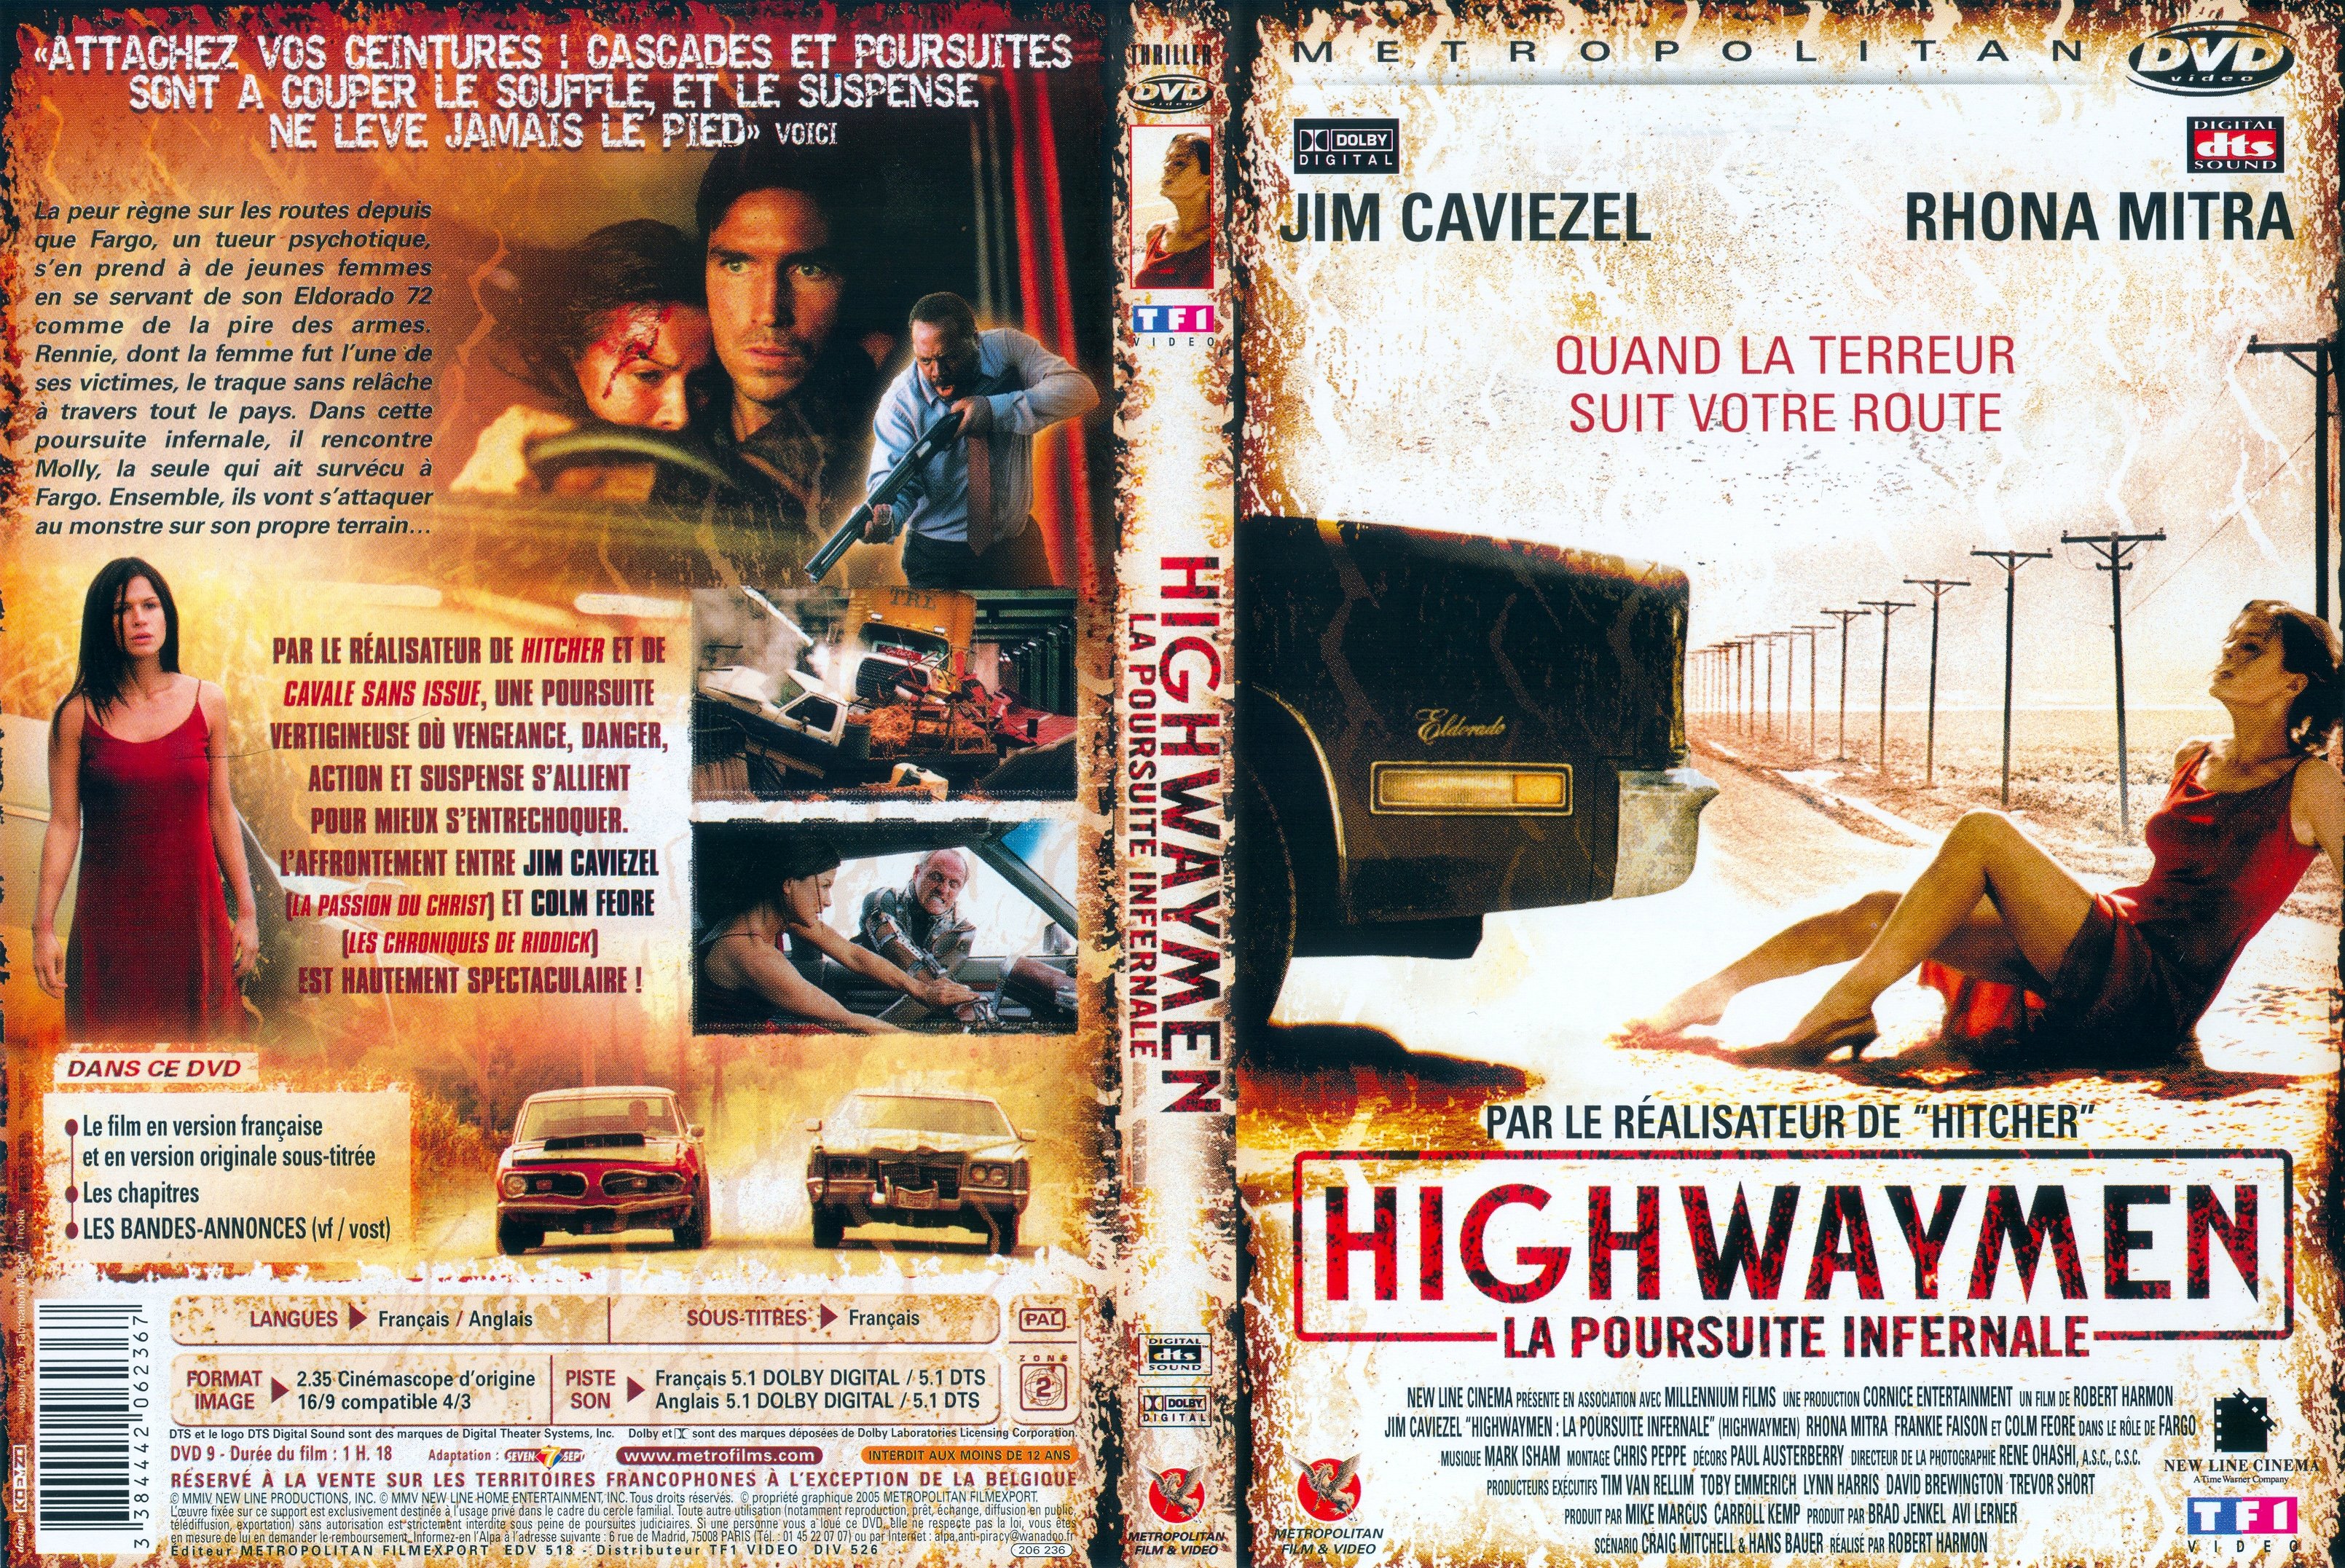 Jaquette DVD Highwaymen v2